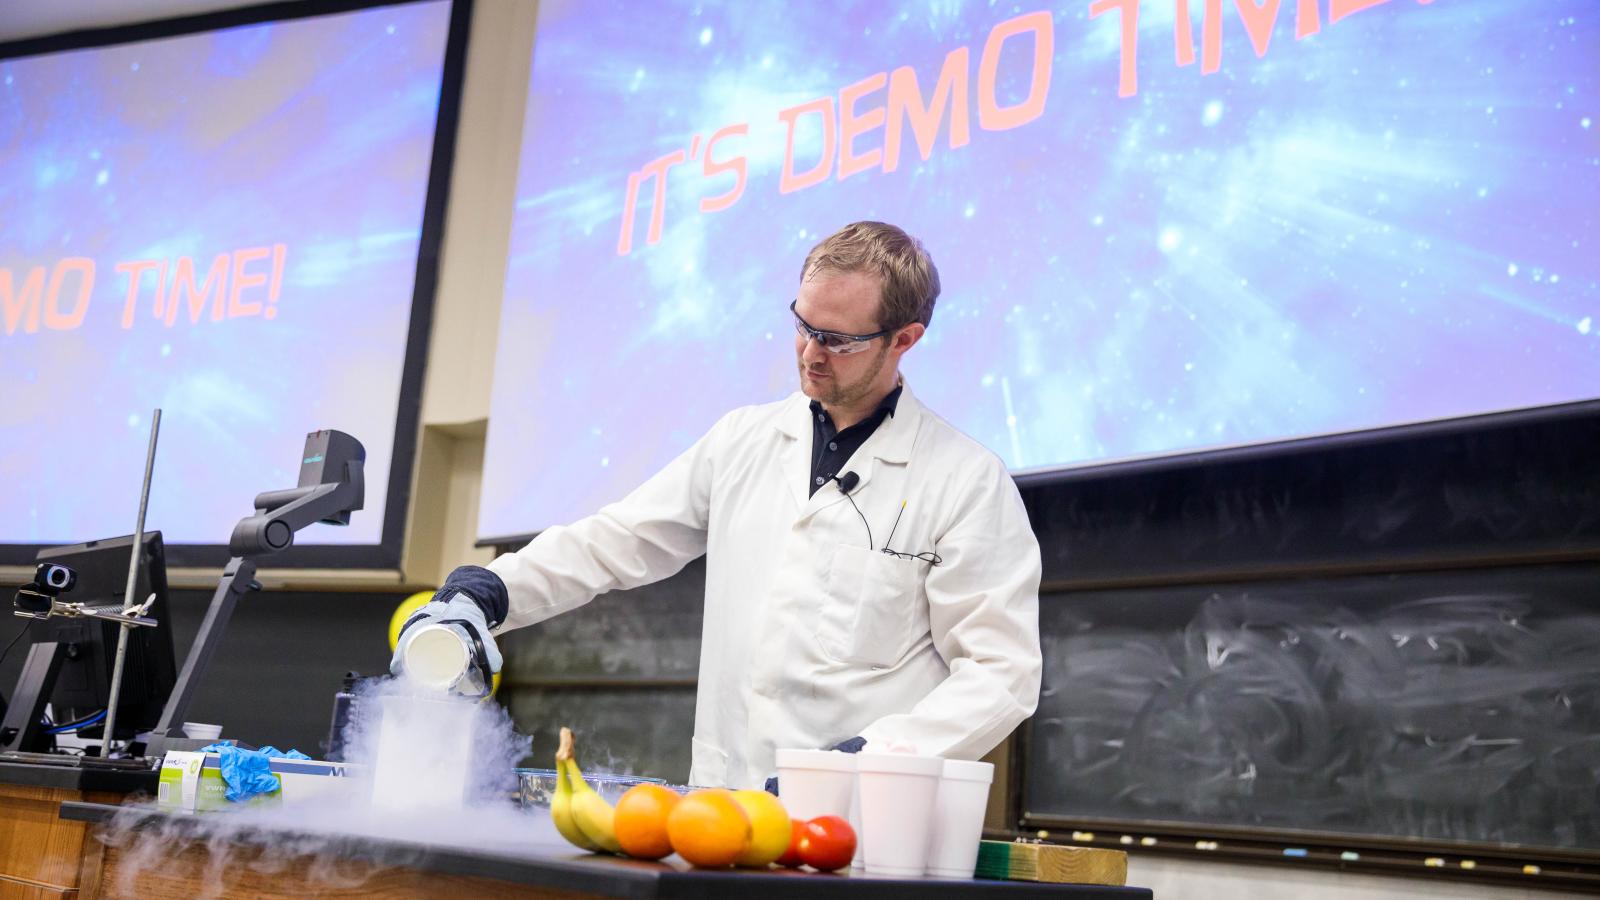 Jonathan Crass completes a liquid nitrogen science demo